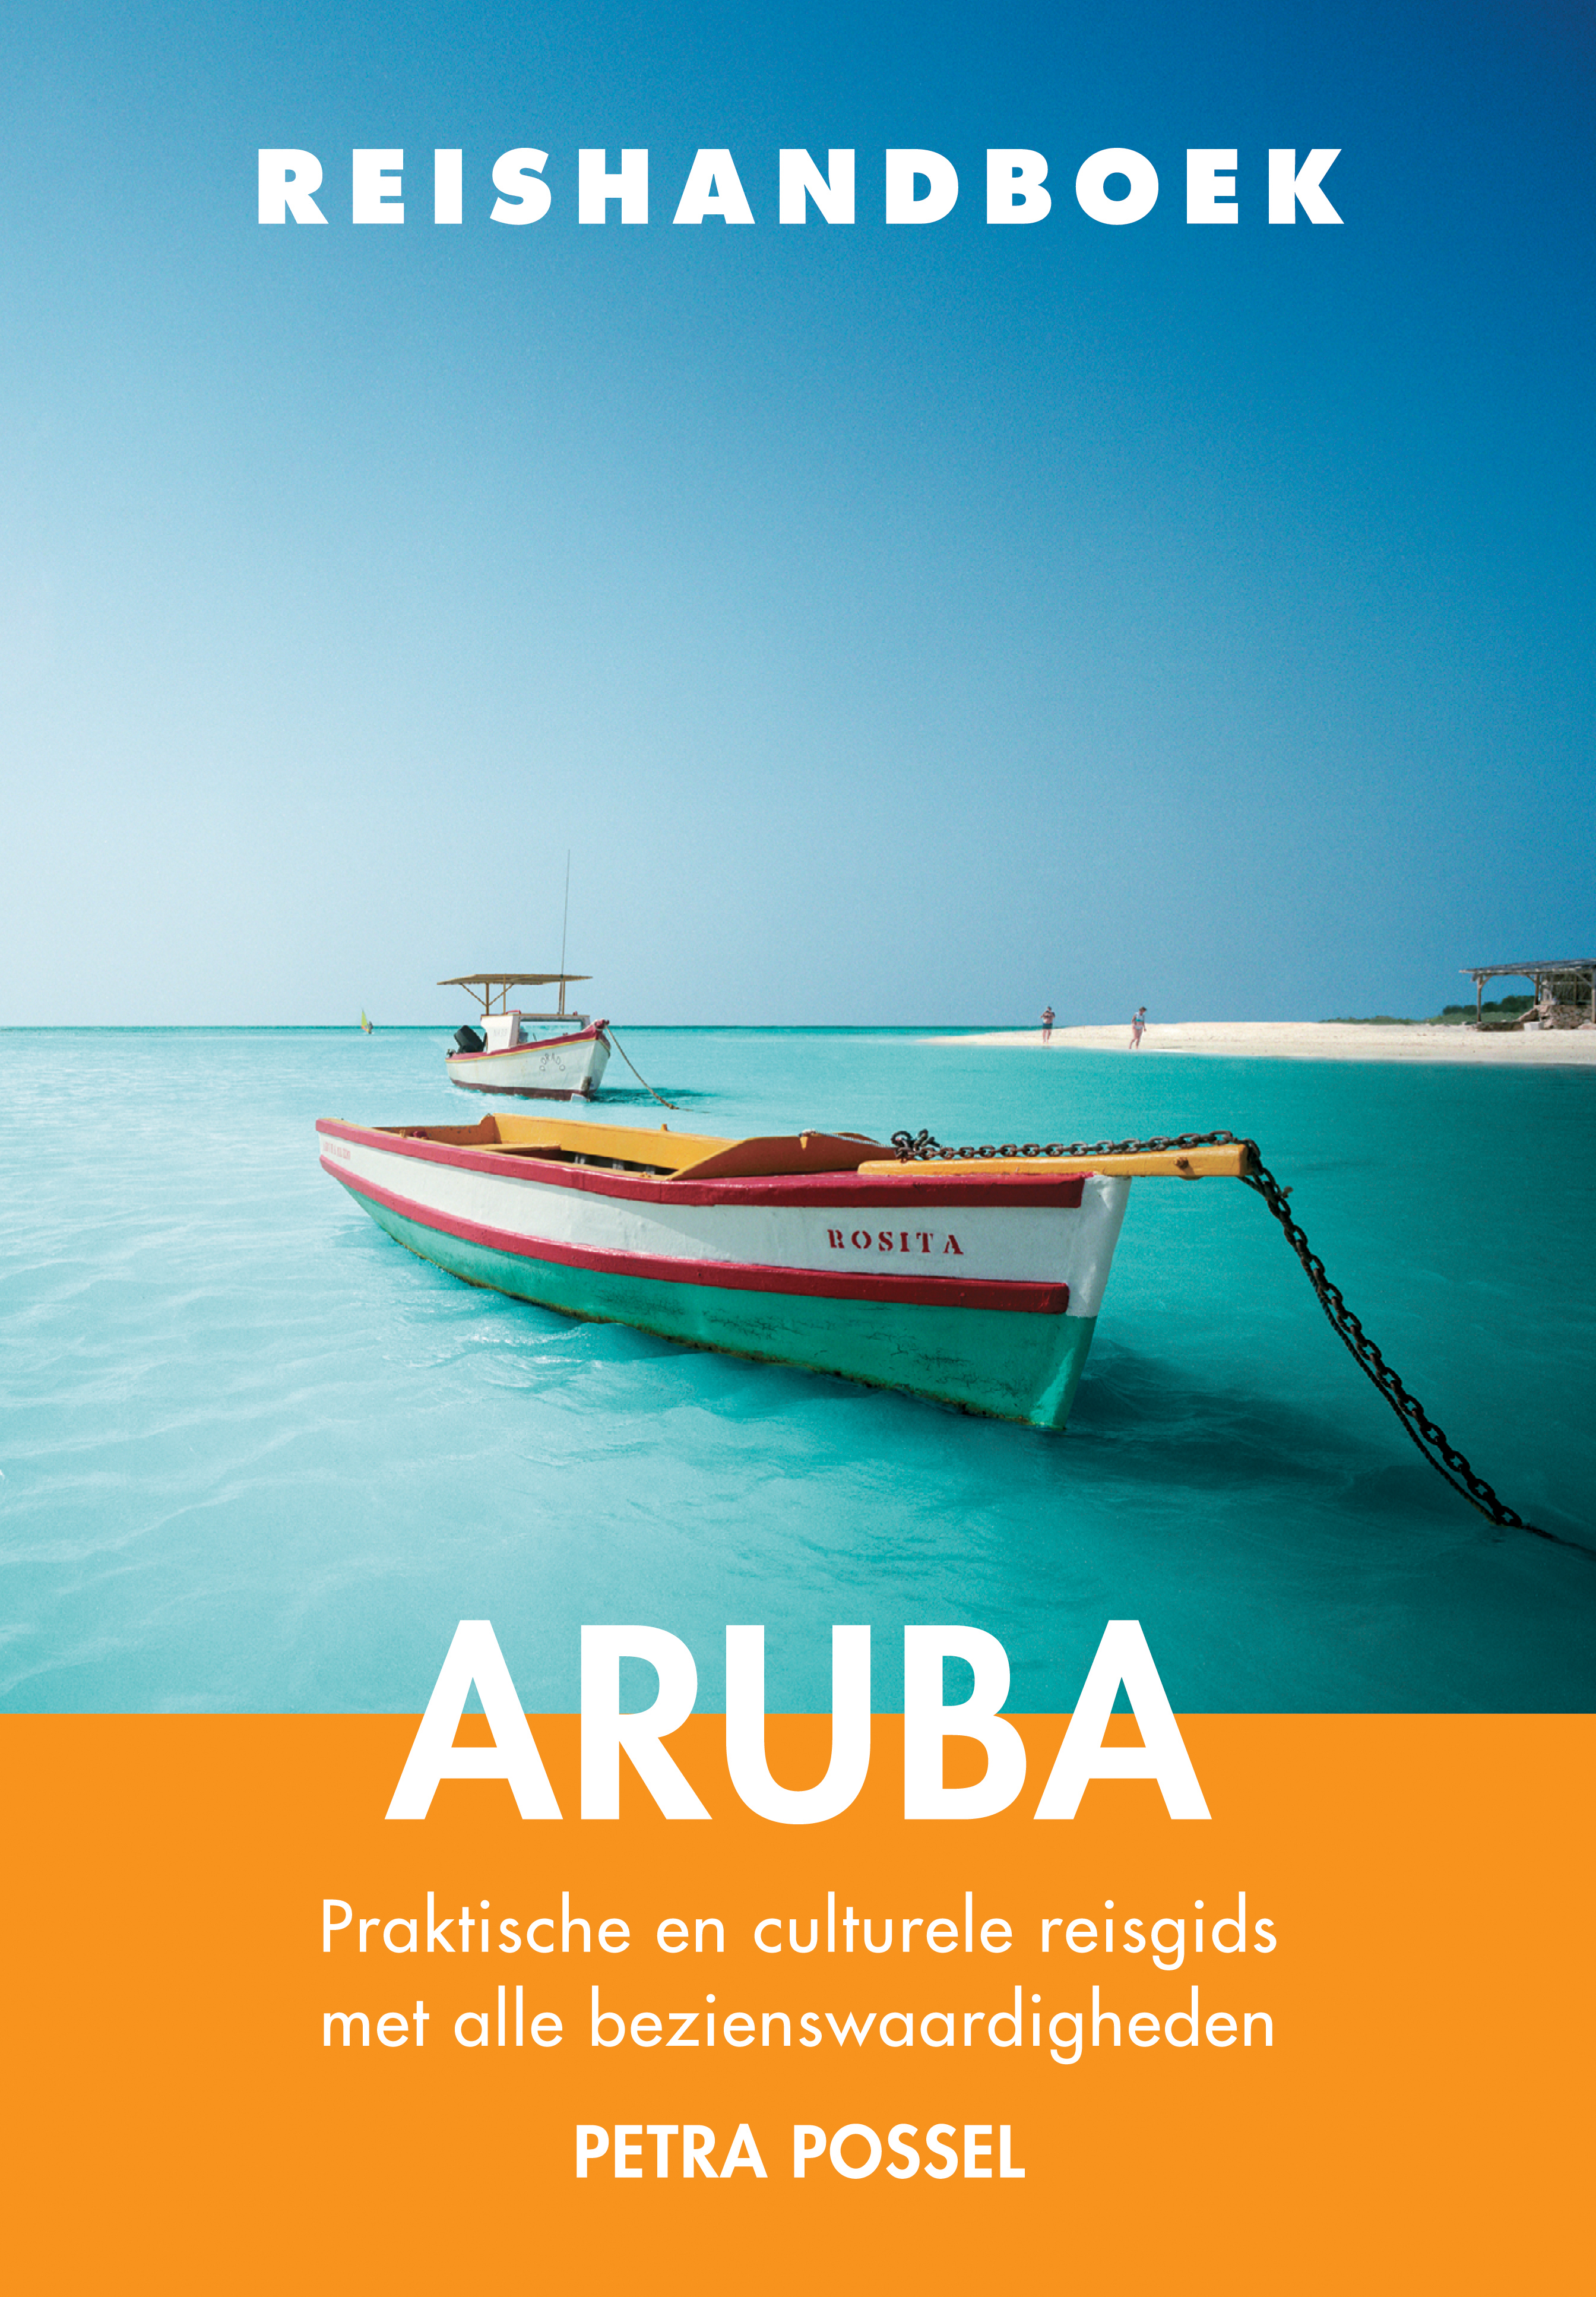 Online bestellen: Reisgids Reishandboek Aruba | Uitgeverij Elmar